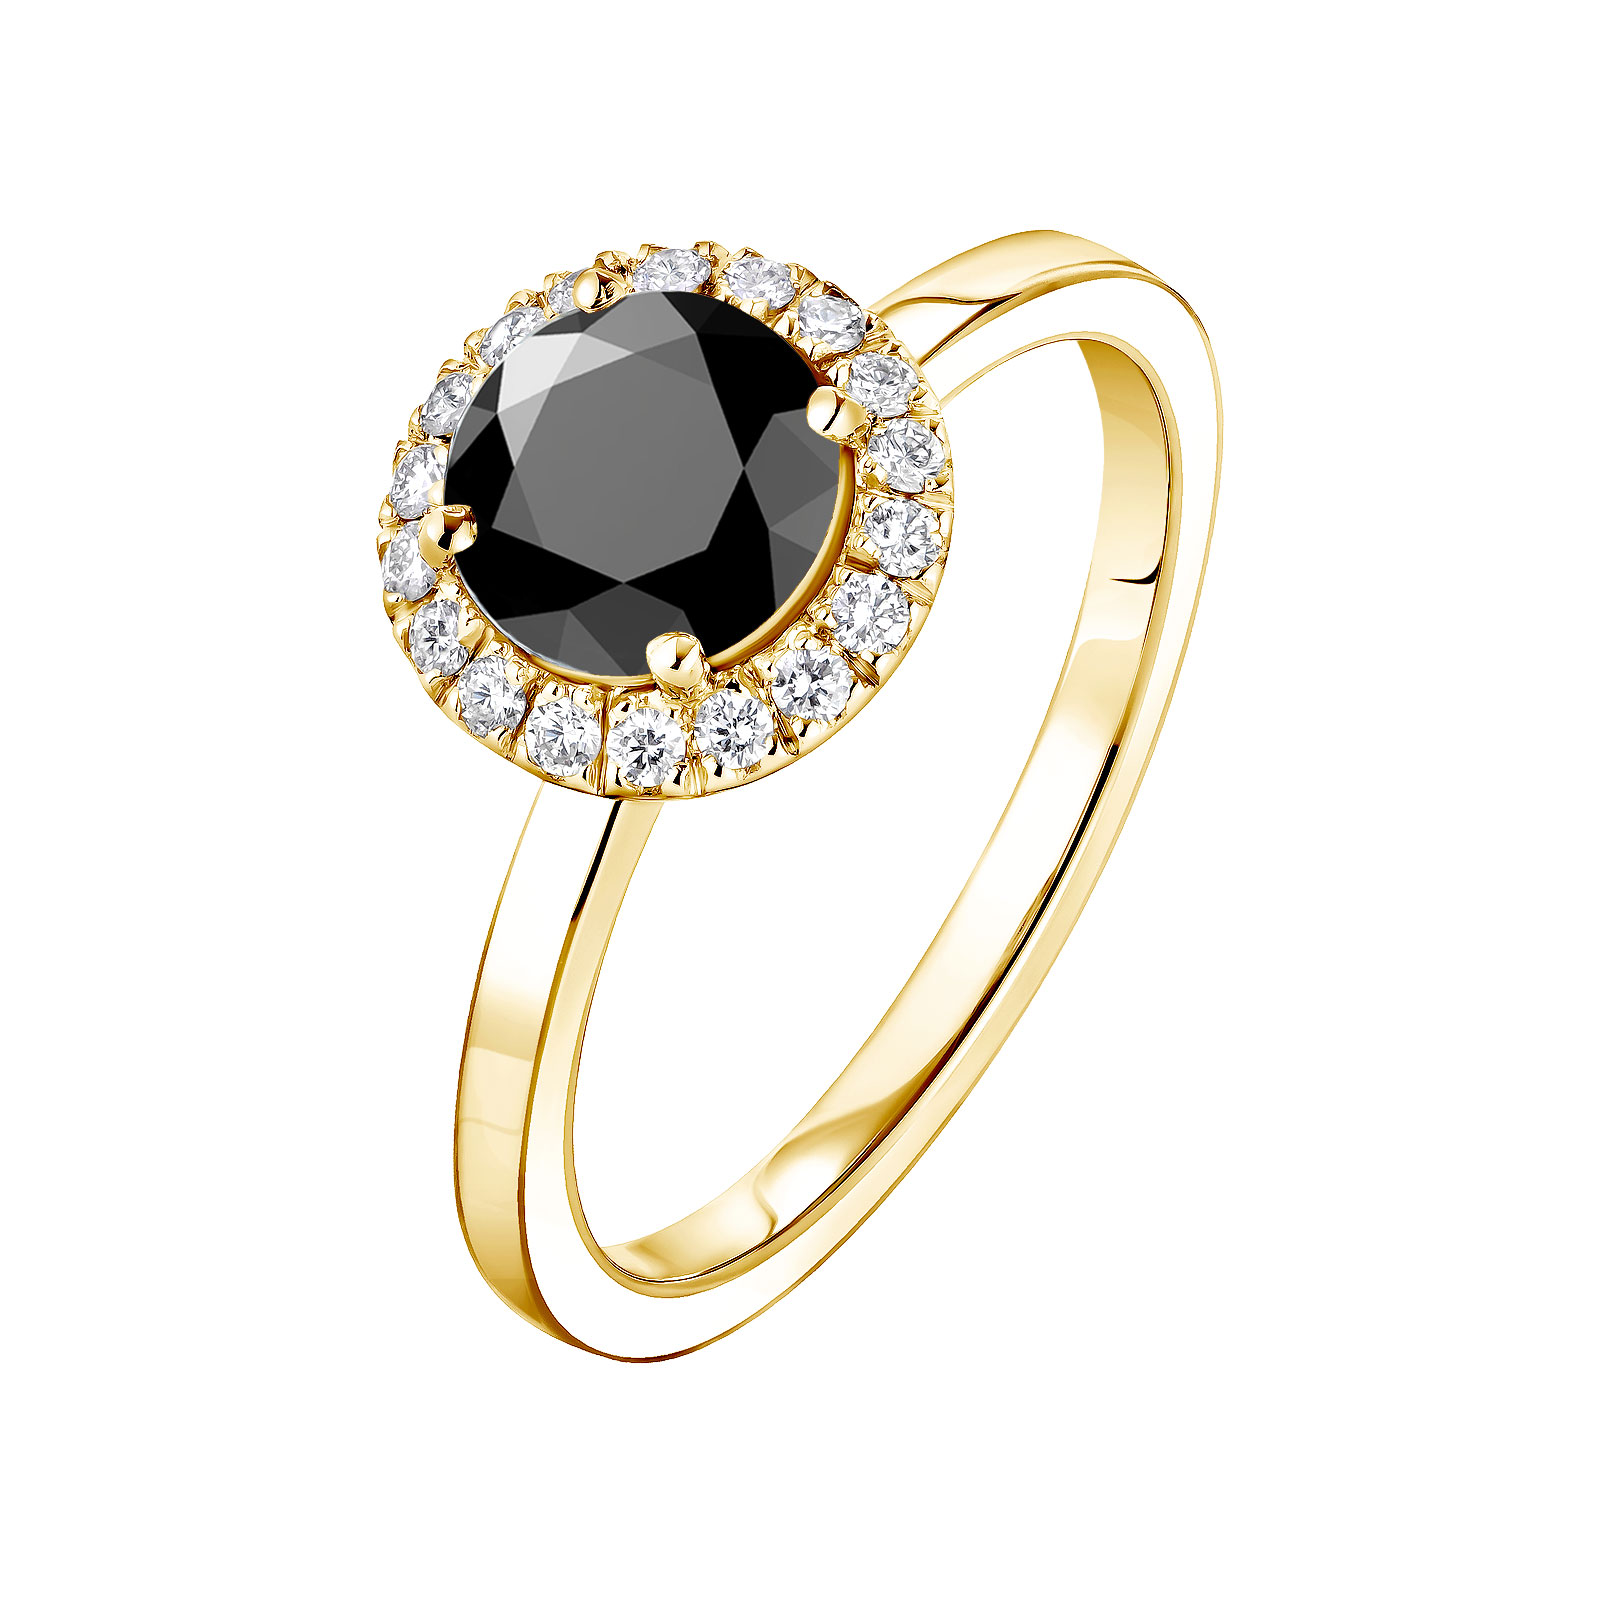 Bague Or jaune Spinelle noir et diamants Rétromantique L 1